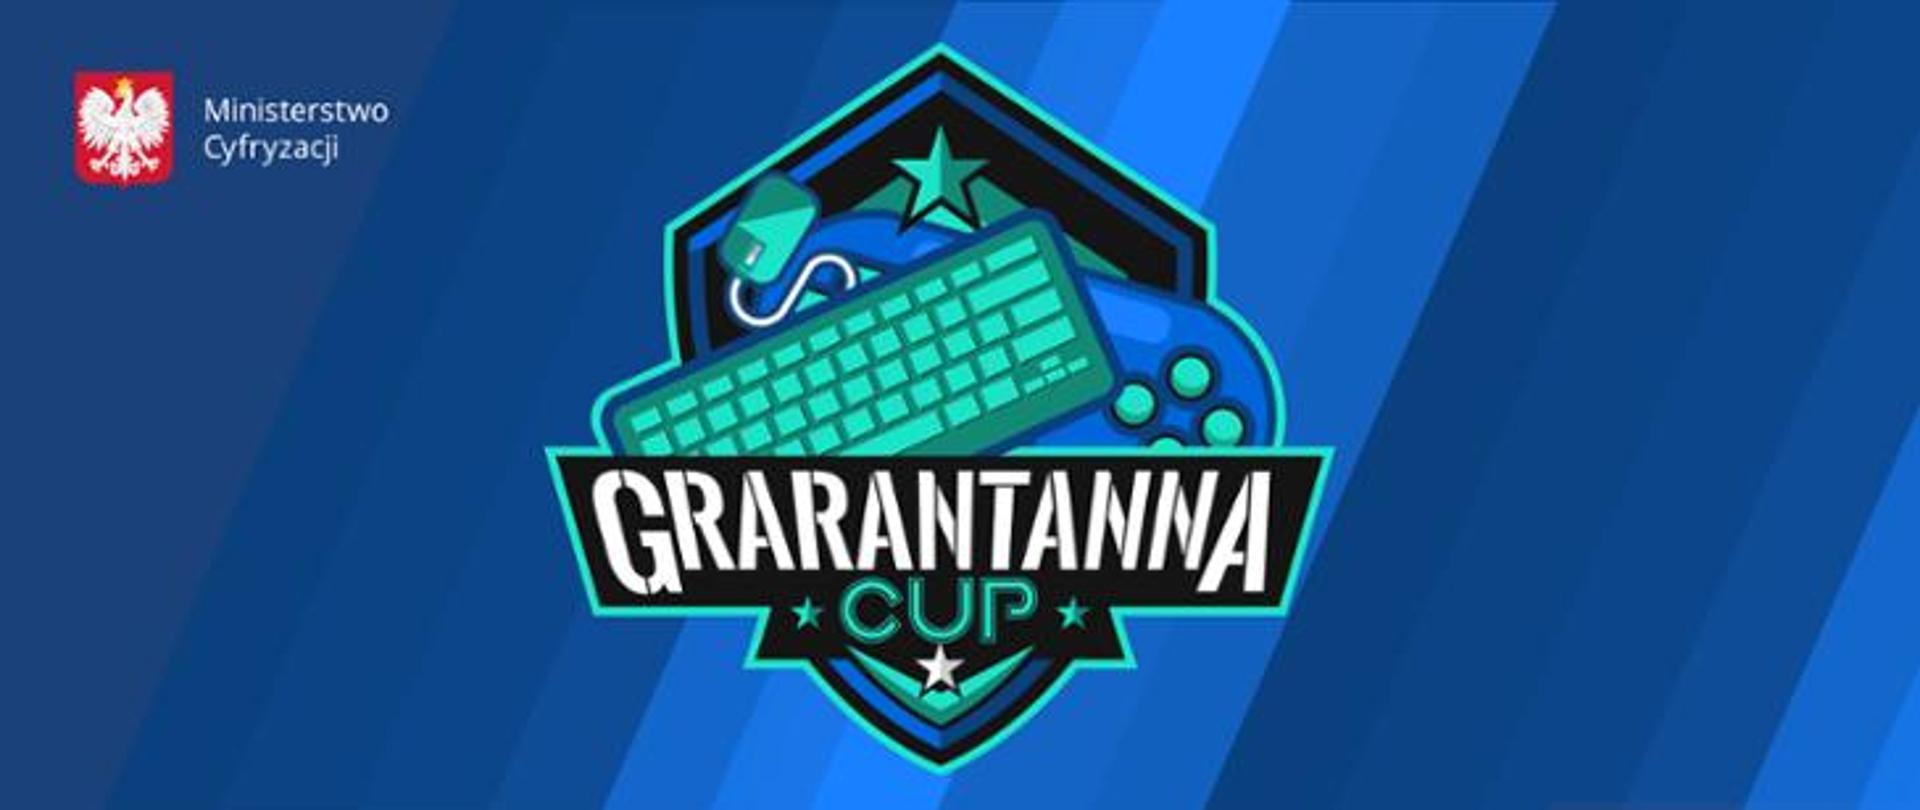 Grarantanna Cup - niebiesko-zielone logo składające się z napisu Grarantanna Cup oraz pada, myszki i klawiatury.